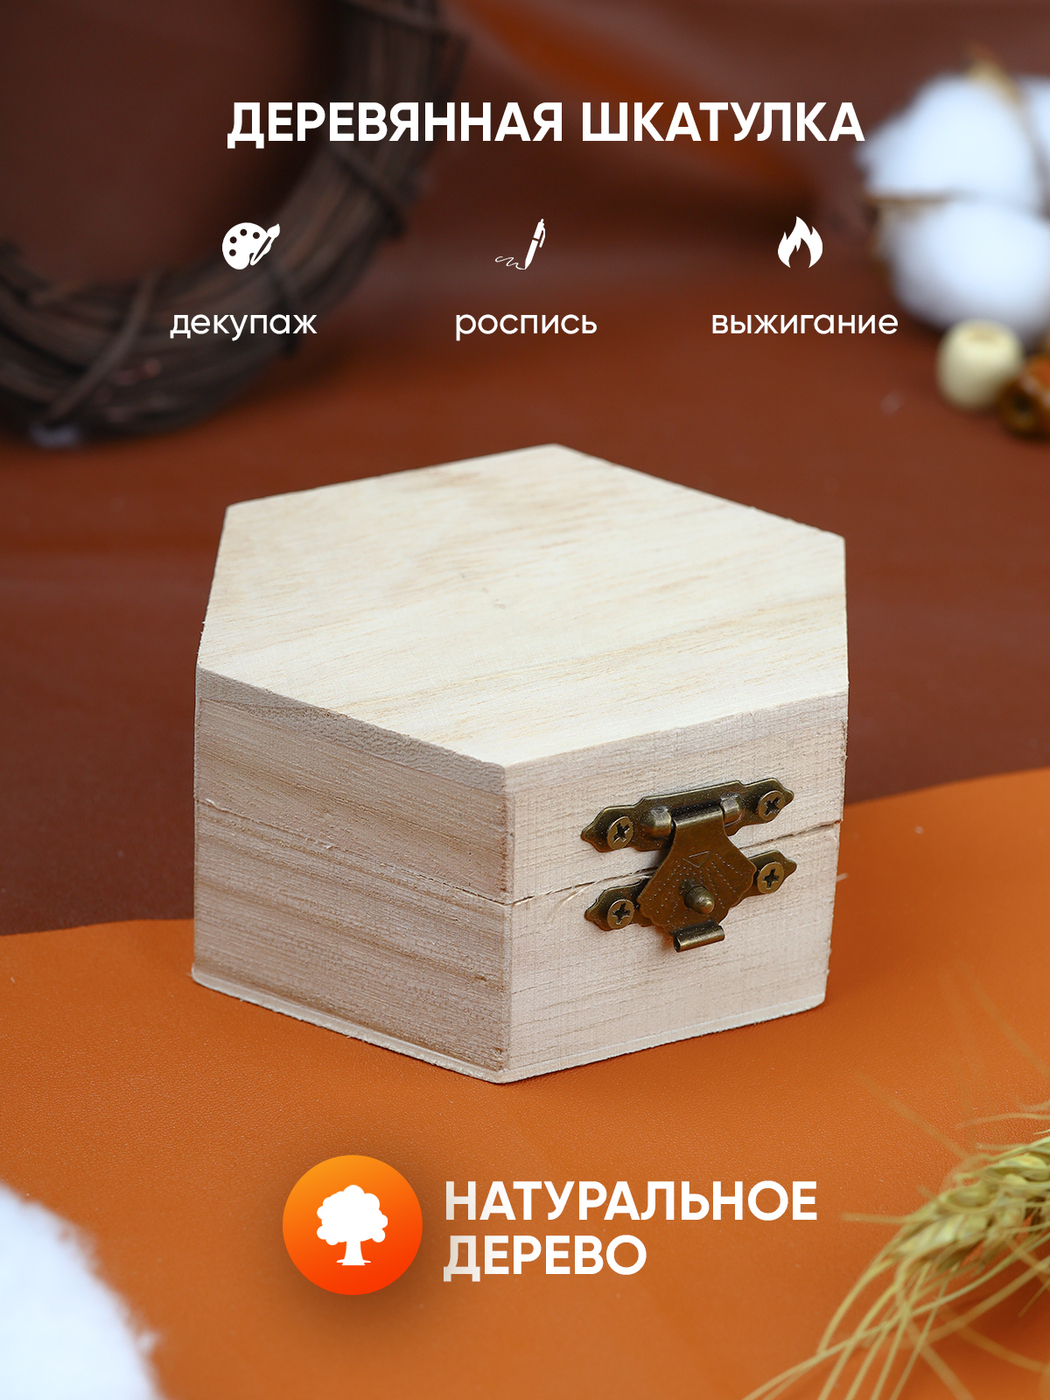 Декупаж. Картинки, салфетки, заготовки и товары для декупажа в Минске.